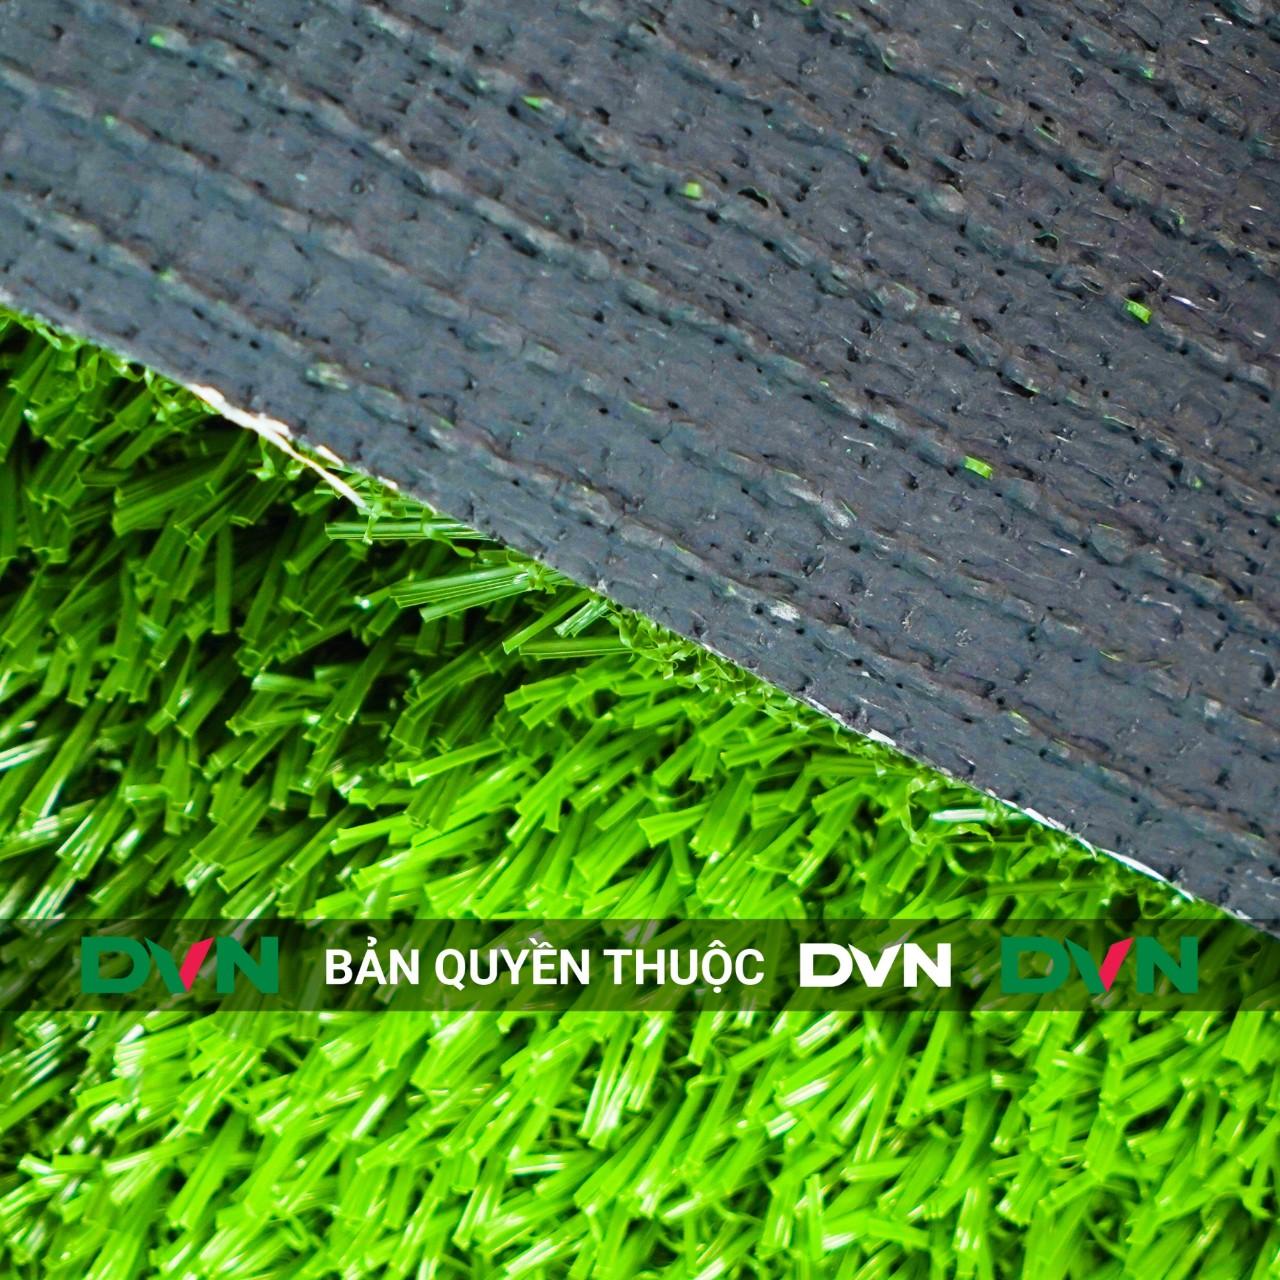 Ưu điểm của dòng cỏ nhân tạo sân bóng sợi xoăn DVN 20S 1